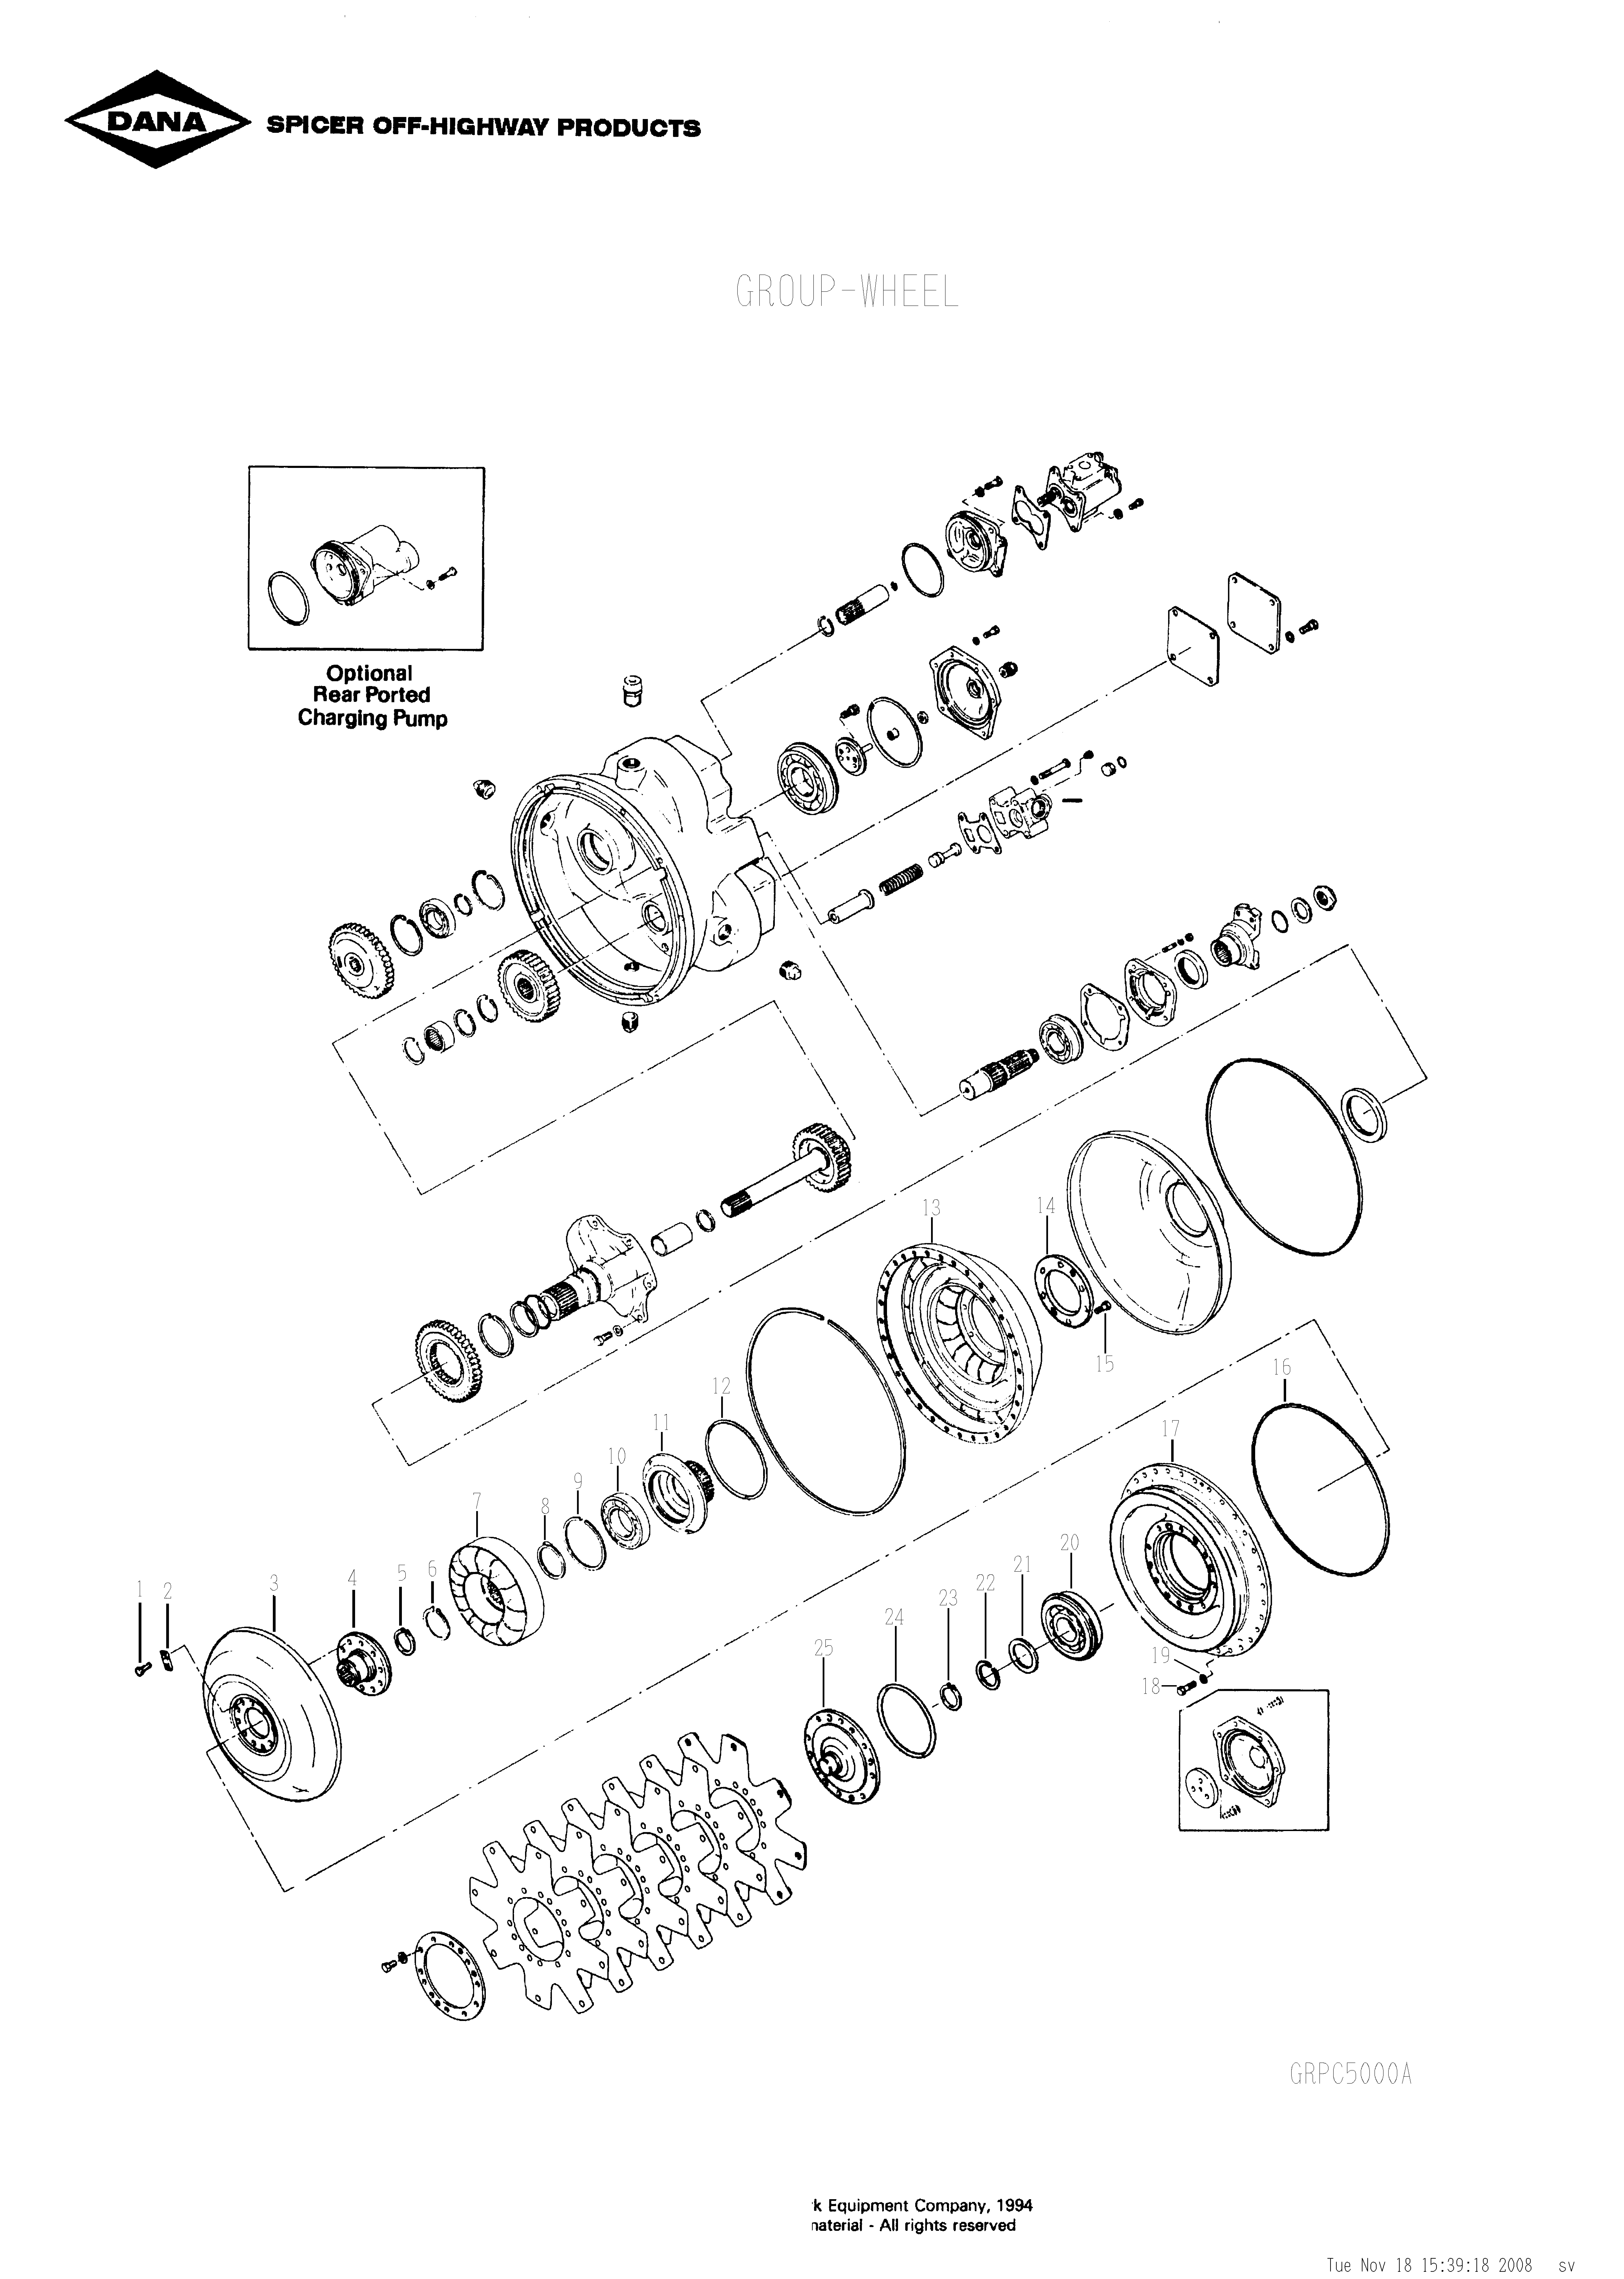 drawing for SCHOEMA, SCHOETTLER MASCHINENFABRIK K24.000086 - O RING (figure 1)